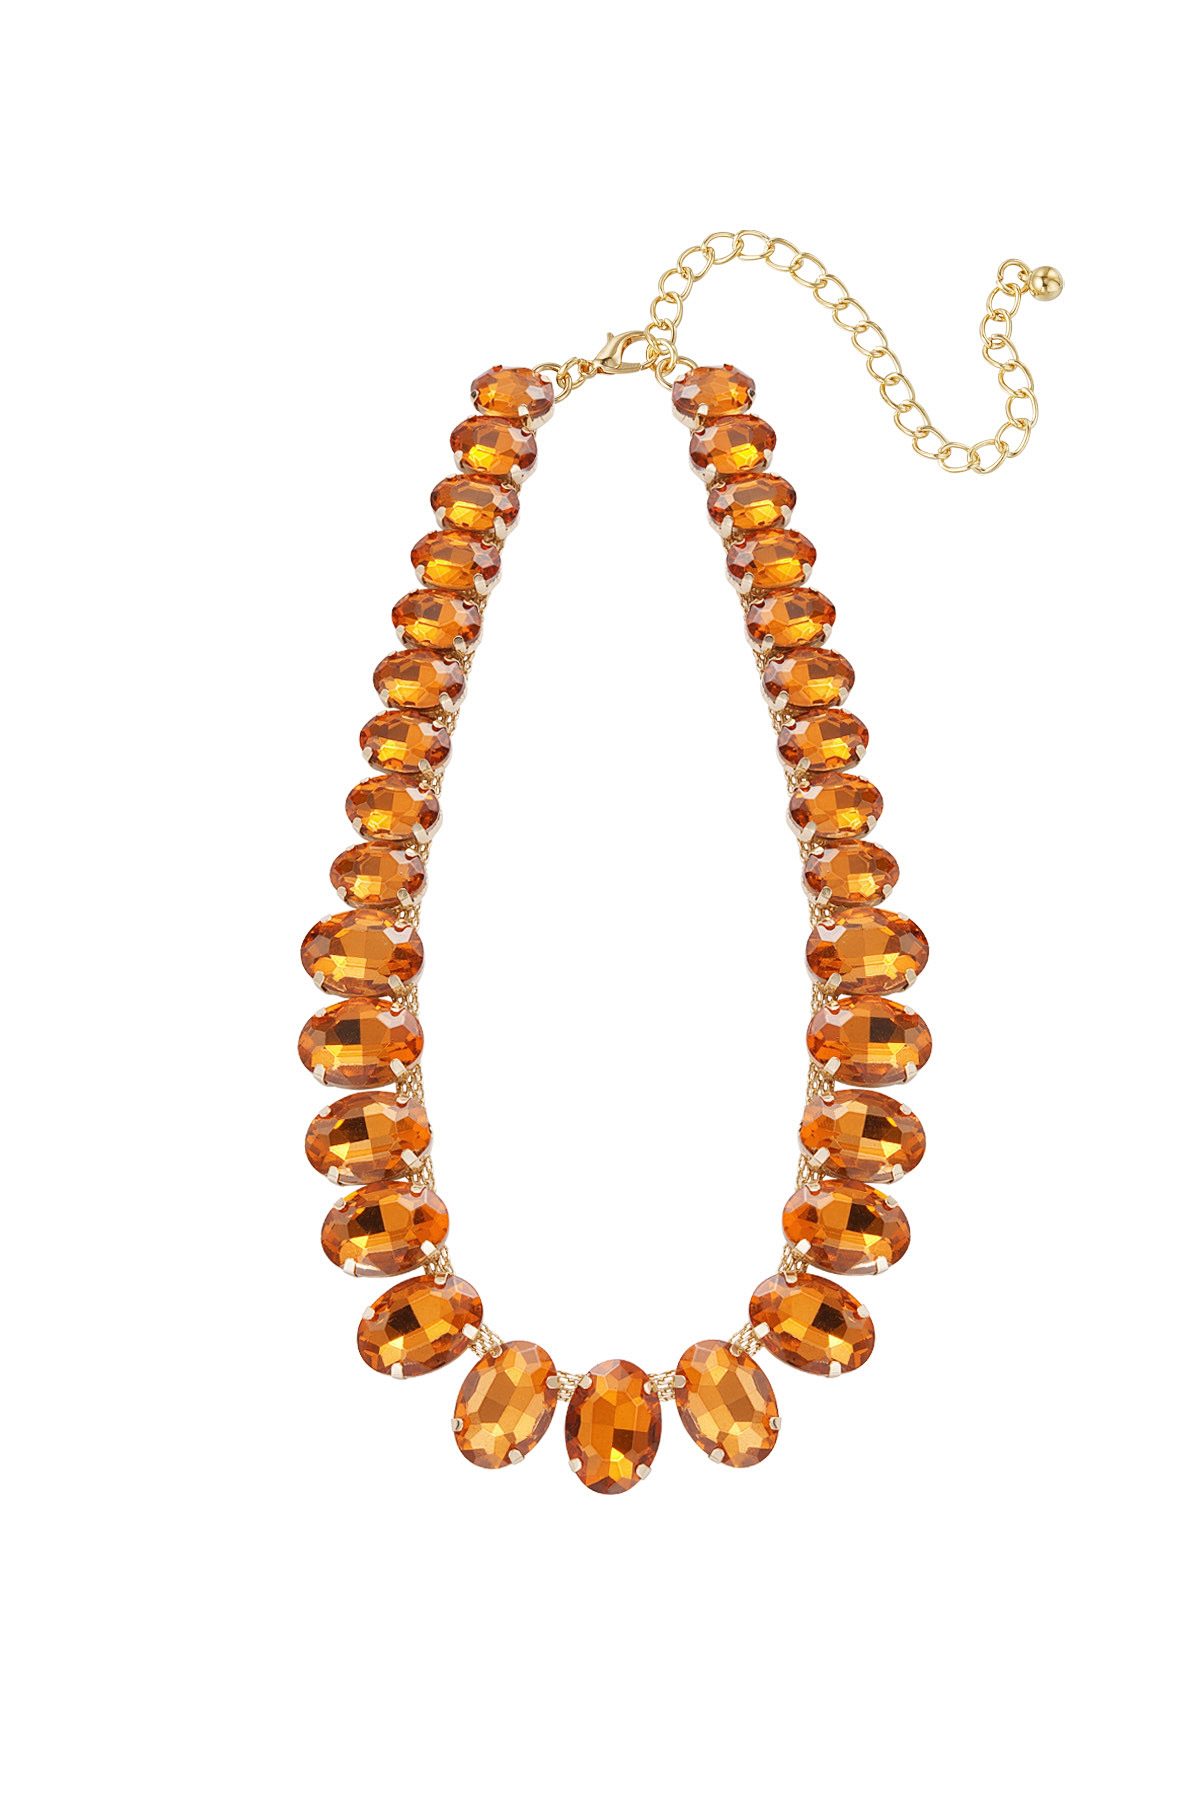 Necklace large oval beads - orange